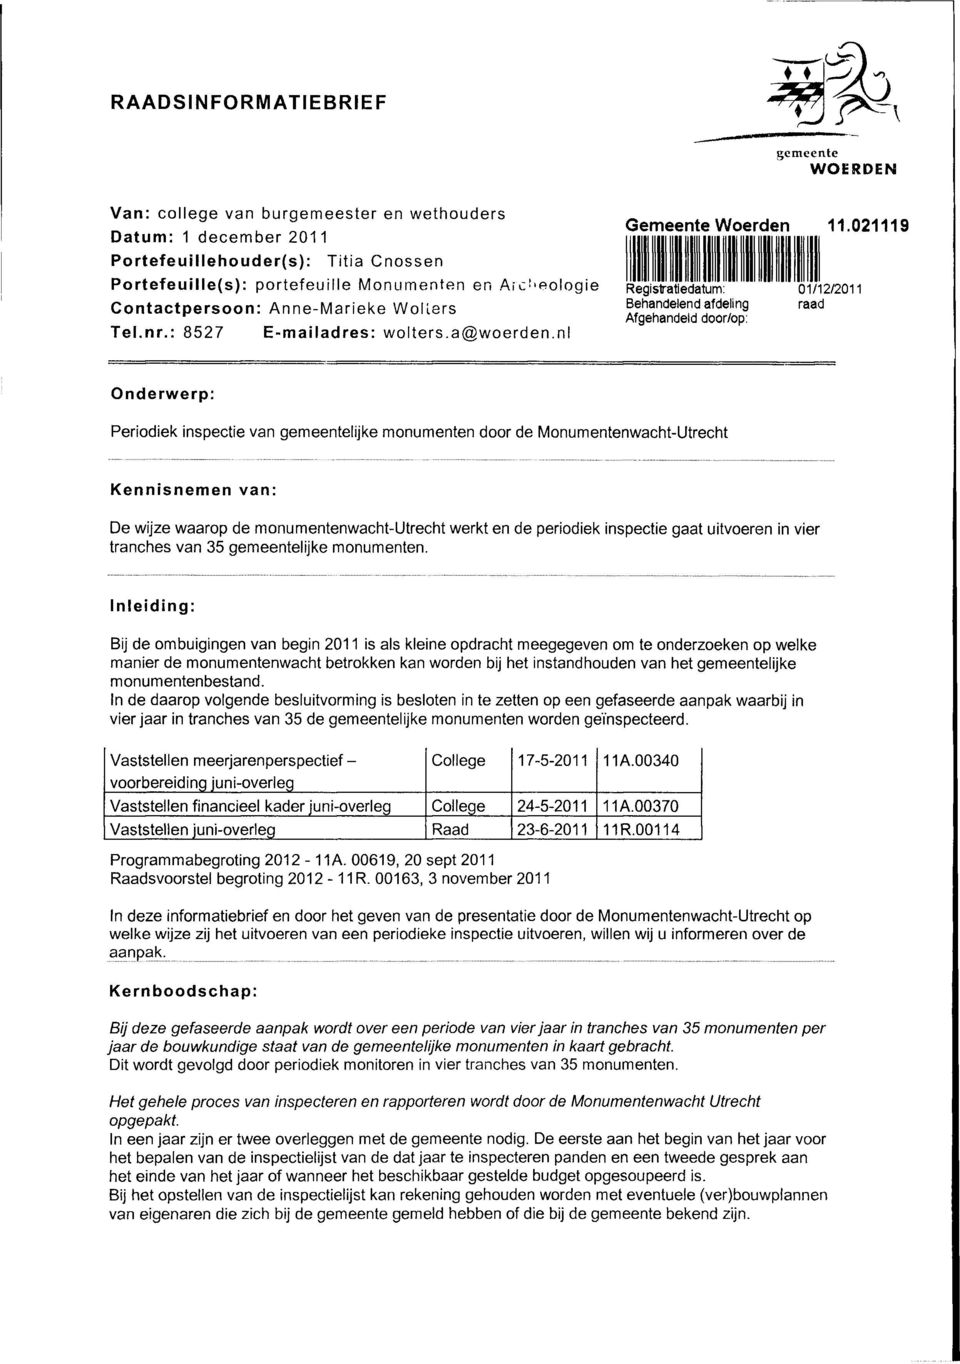 021119 Registratiedatum: Behadeled afdelig Afgehadeld door/op: 01/12/2011 raad Oderwerp: Periodiek ispectie va gemeetelijke moumete door de Moumetewacht-Utrecht Keiseme va: De wijze waarop de